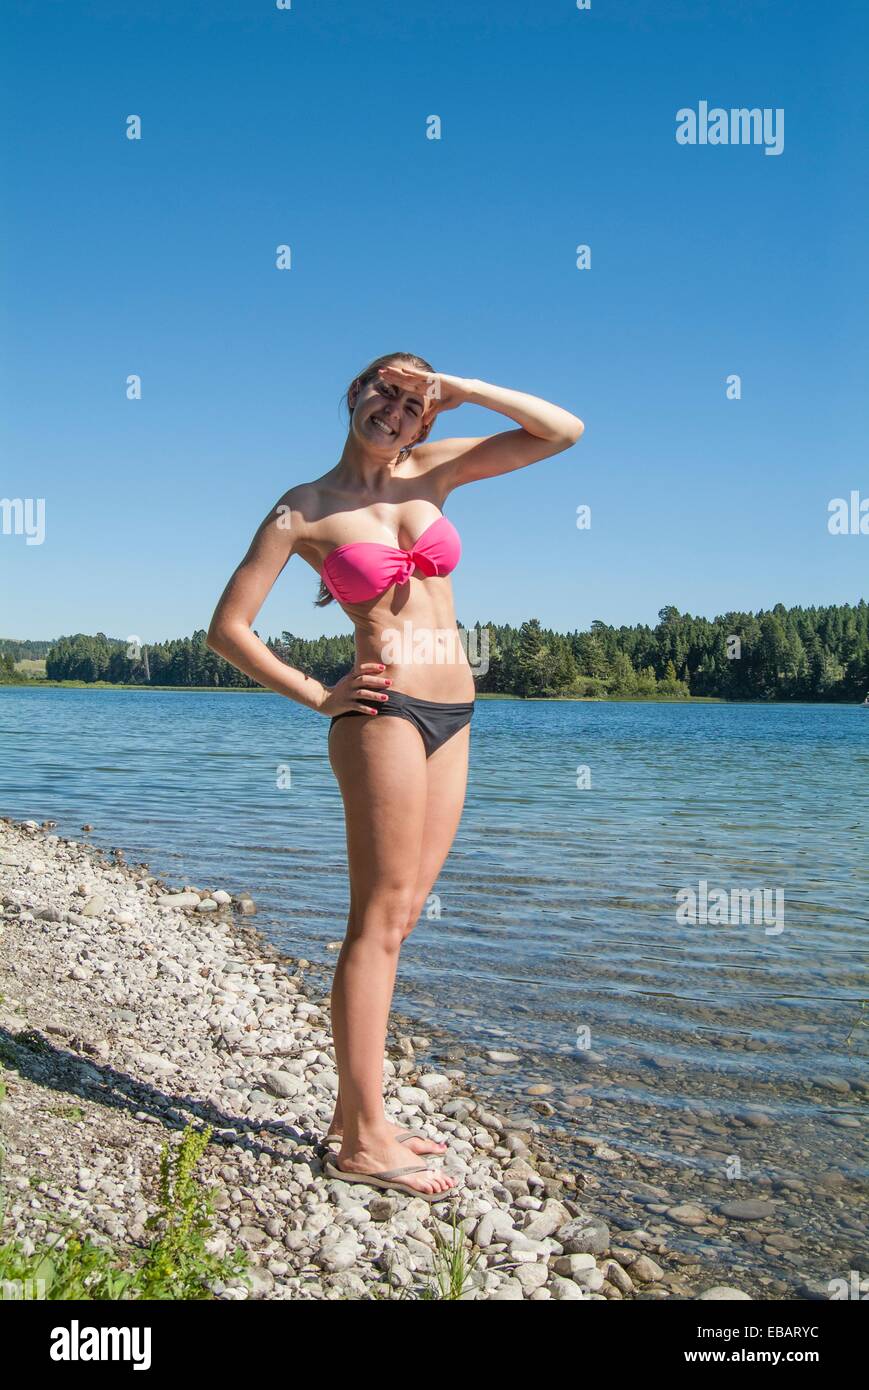 de 15 años en bikini fotografías imágenes de alta resolución - Alamy